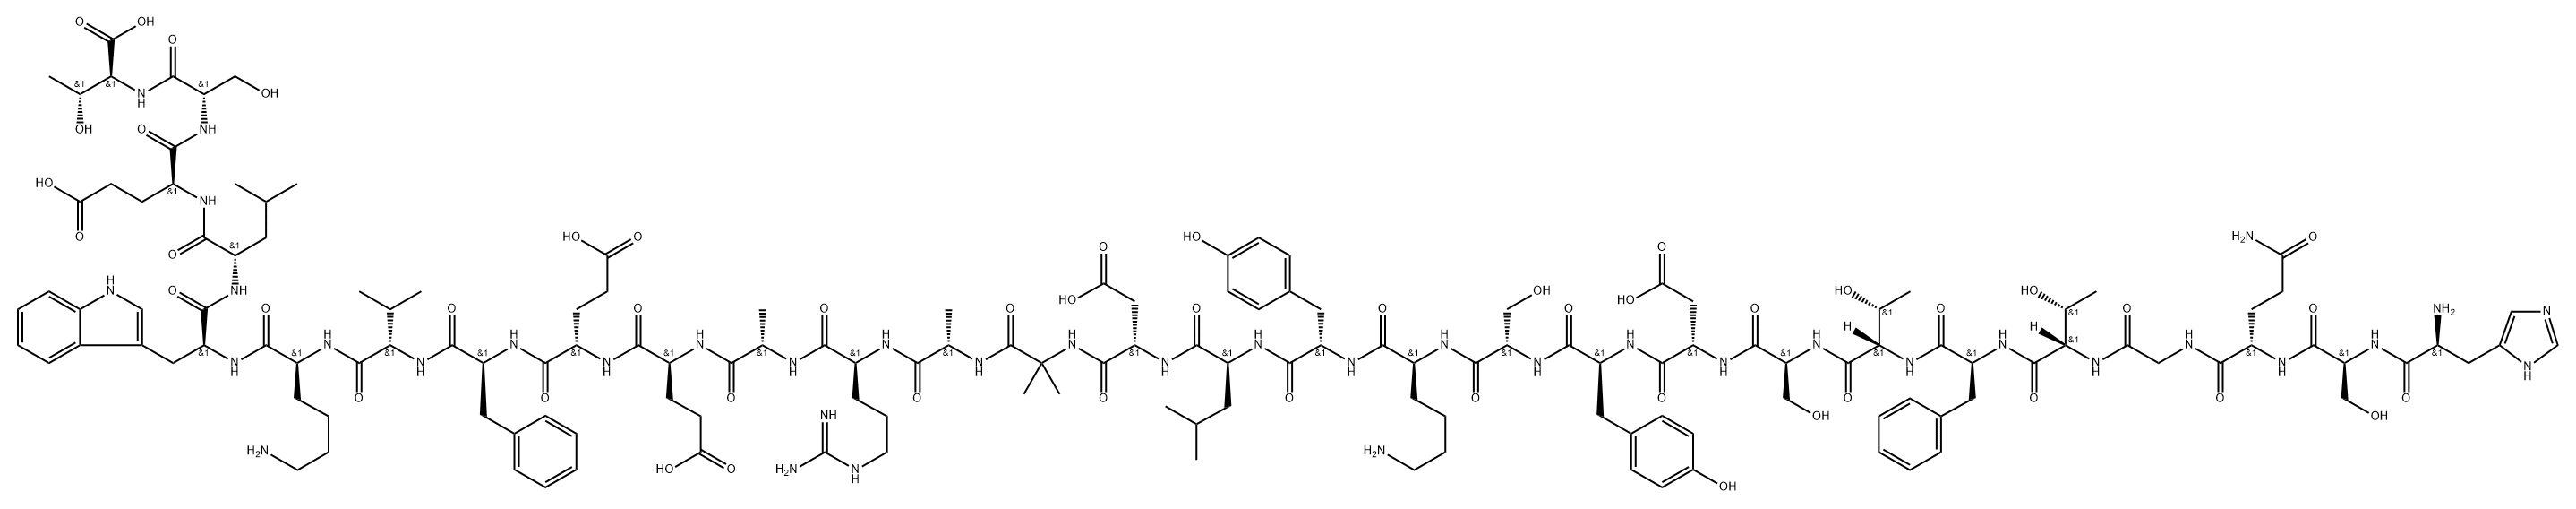 胰高血糖素稳定类似物多肽DASIGLUCAGON, 1544300-84-6, 结构式